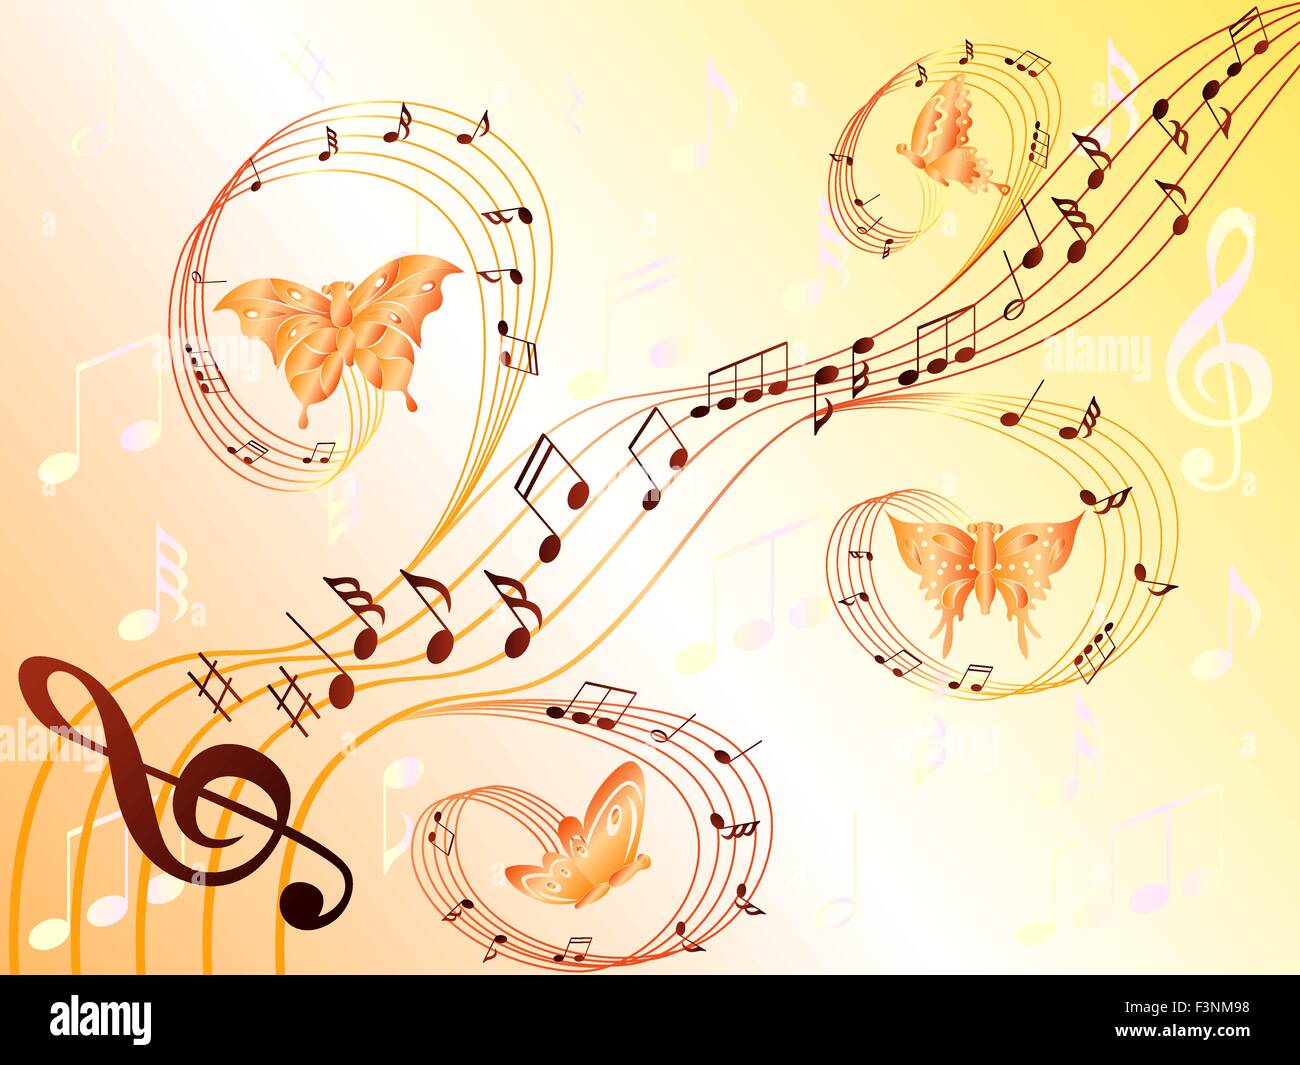 Verschiedene Noten auf Notenlinien und Schmetterlinge fliegen entlang, hand Zeichnung stilisierte Vektor-illustration Stock Vektor